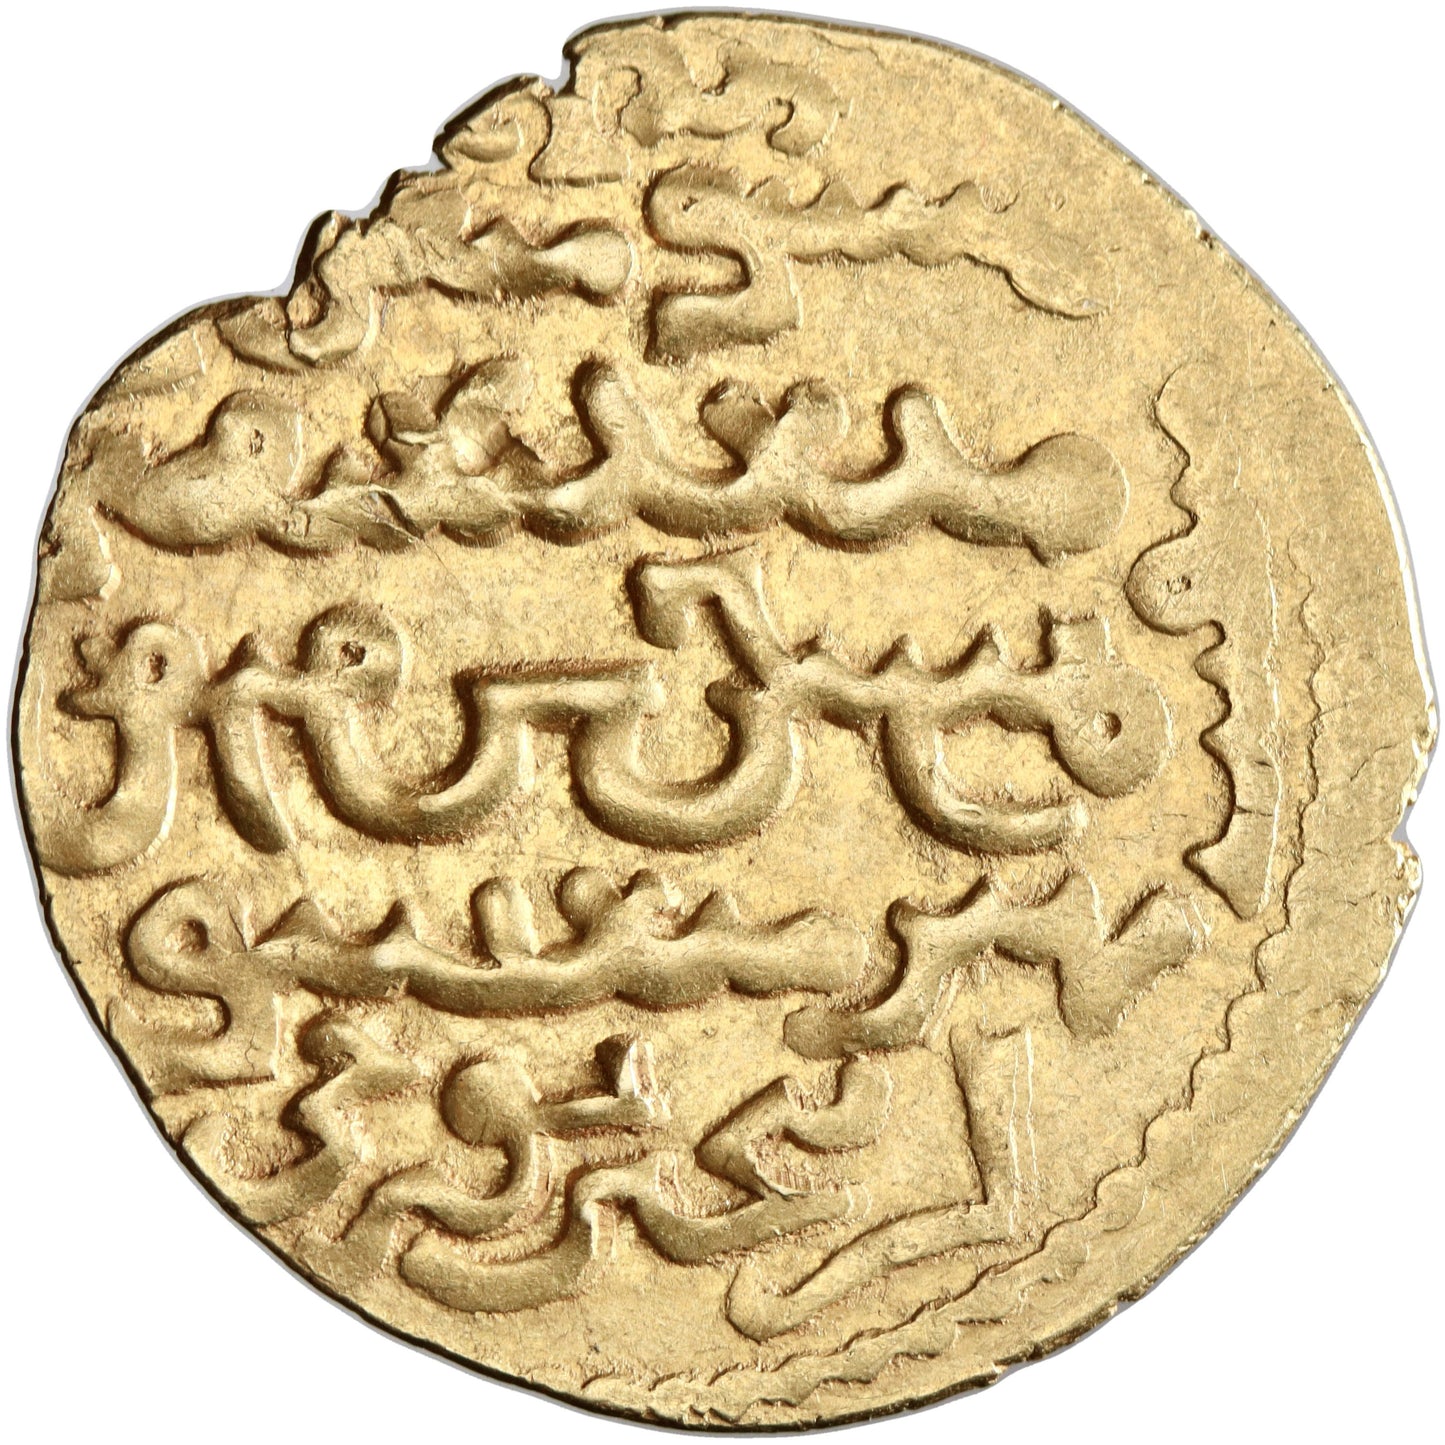 Ilkhanid, Gaykhatu, gold dinar, Tabriz mint, AH 691, legends in both Arabic and Uyghur script